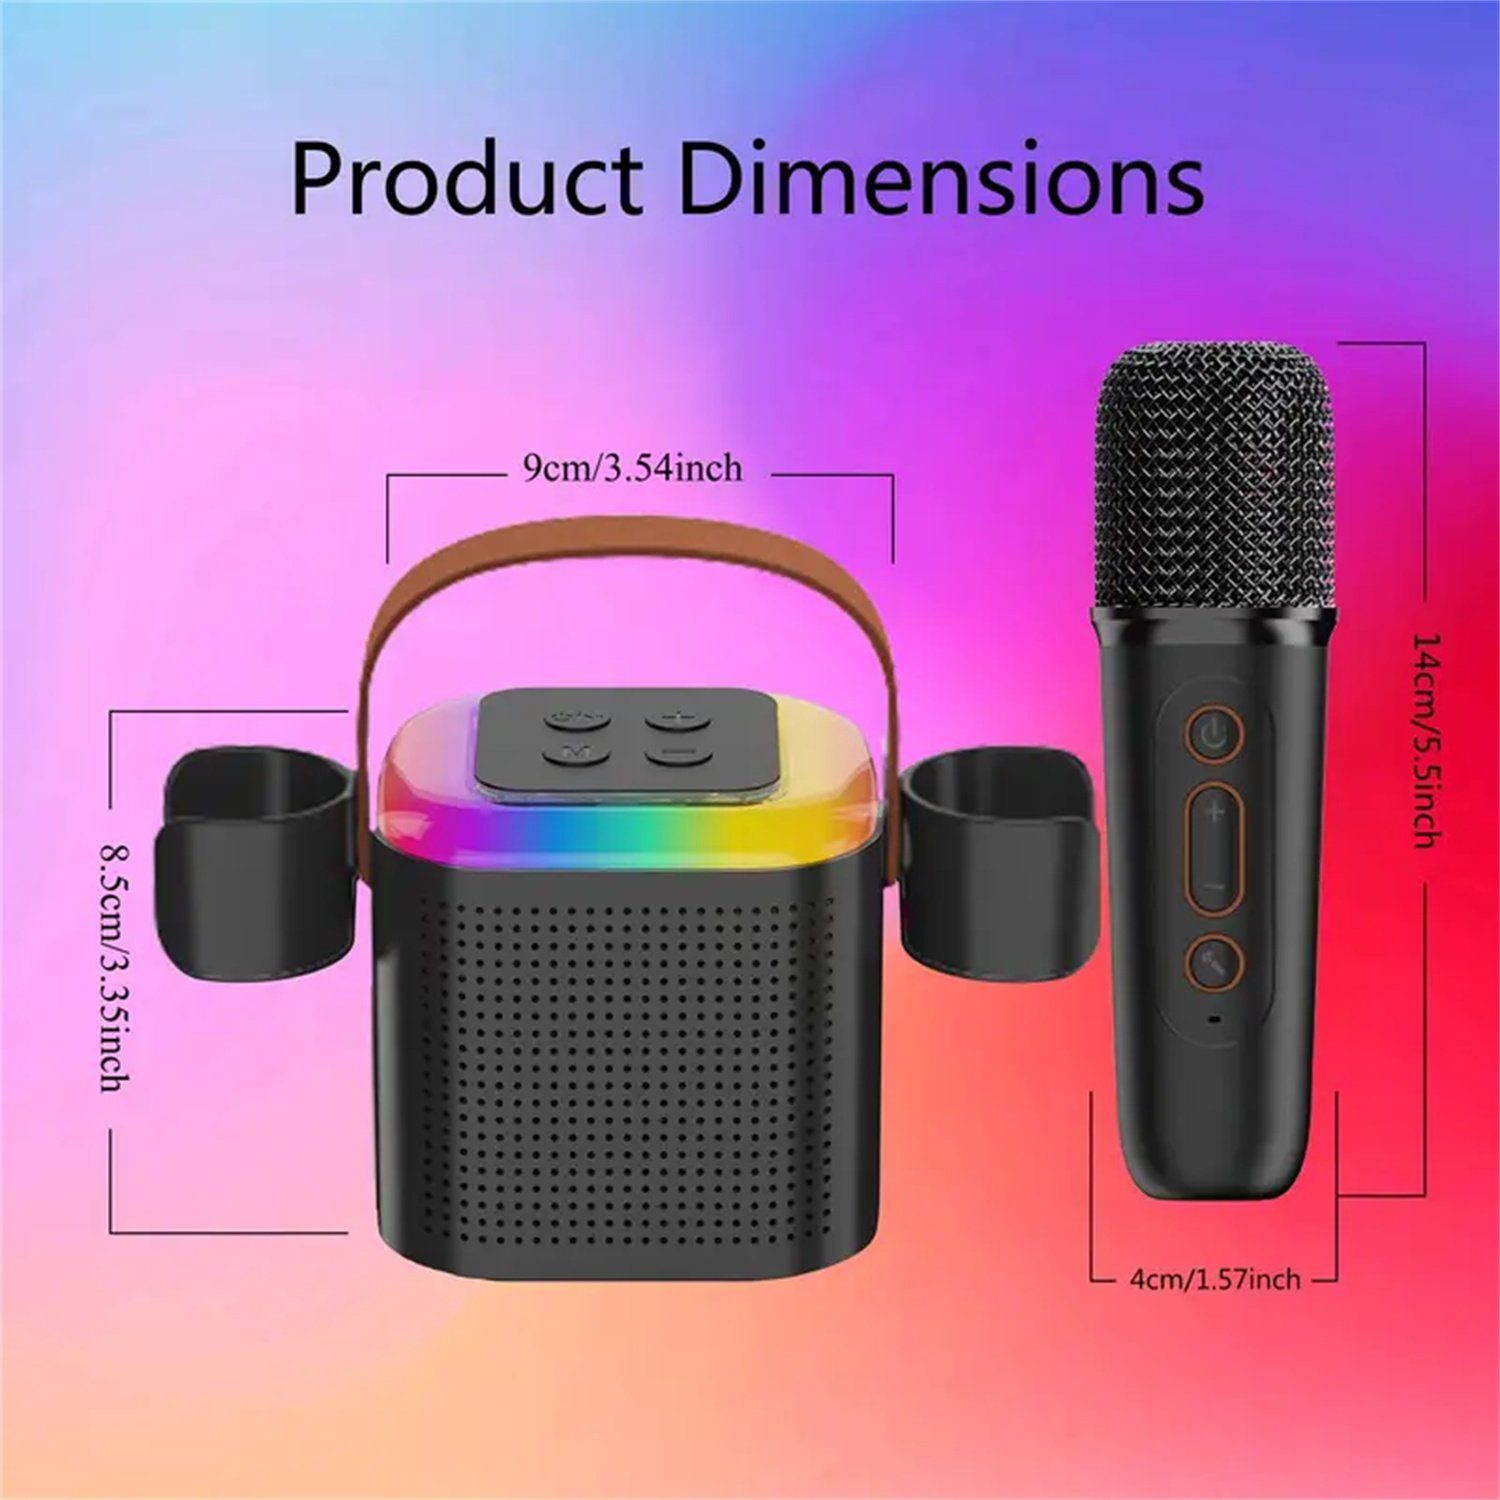 Lautsprecher vier RGB-Beleuchtungsmodi autolock mit verschiedenen Bluetooth-Lautsprecher